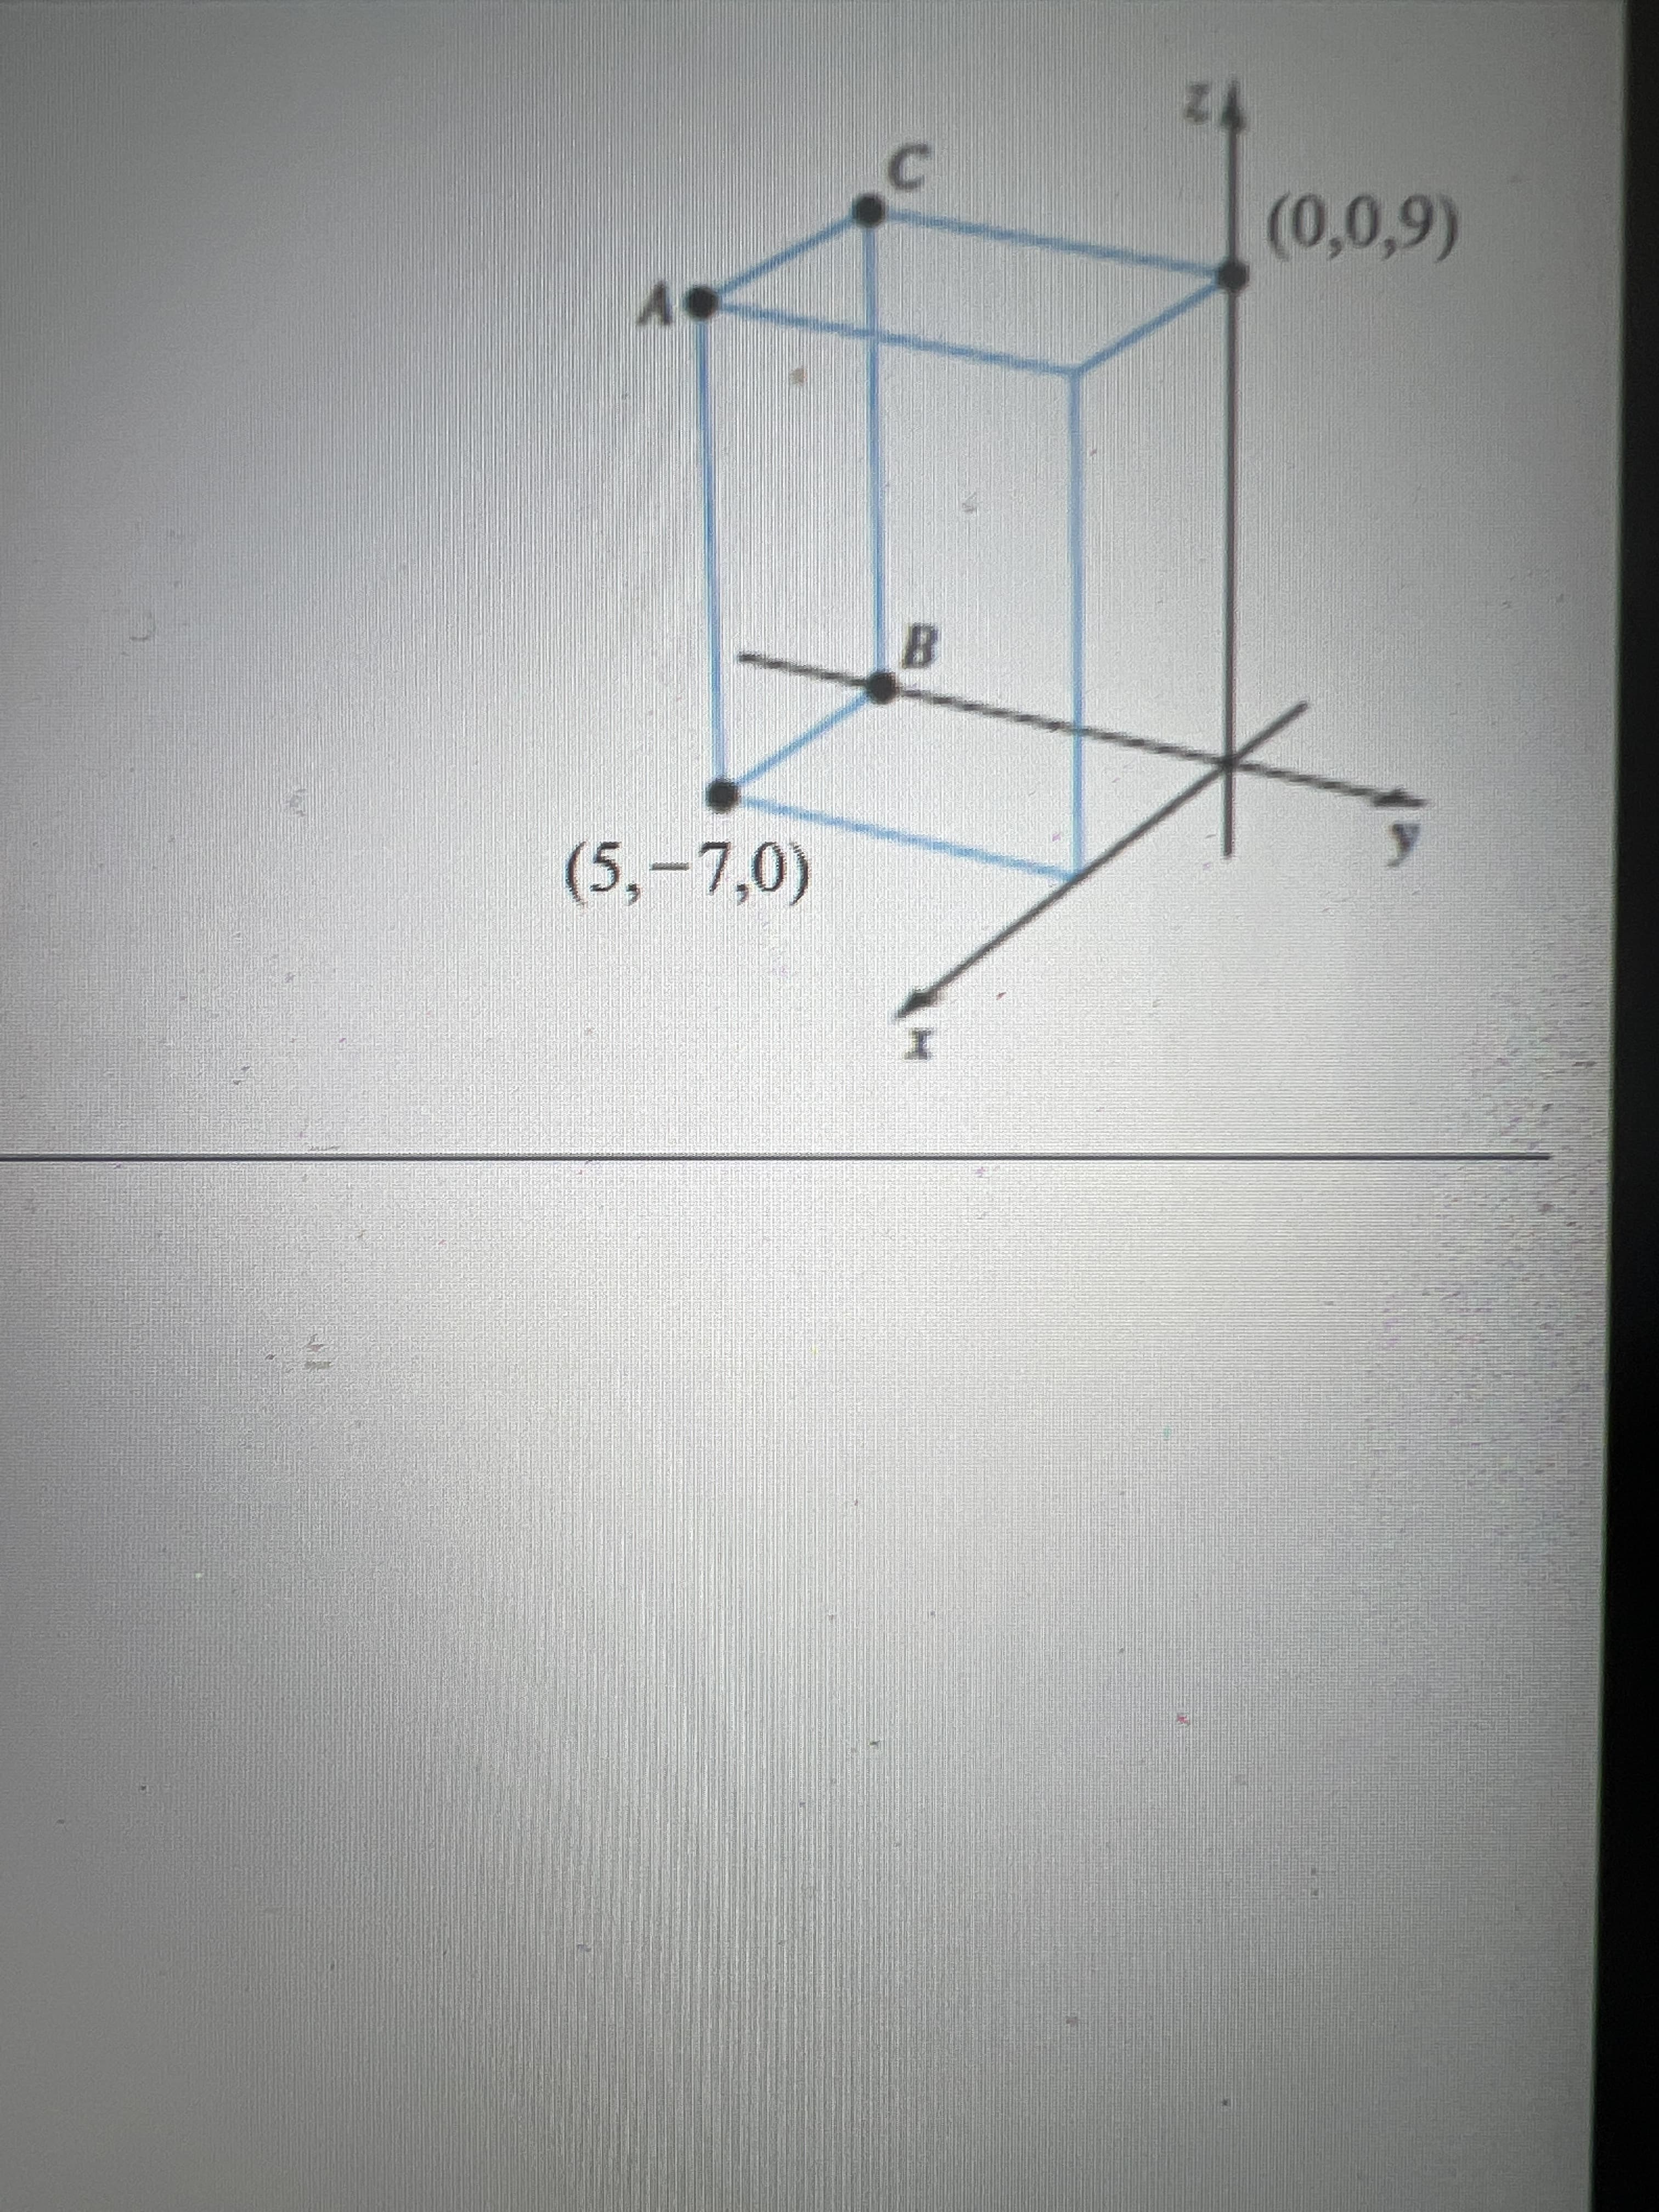 C.
(0,0,9)
B.
(5,-7,0)
